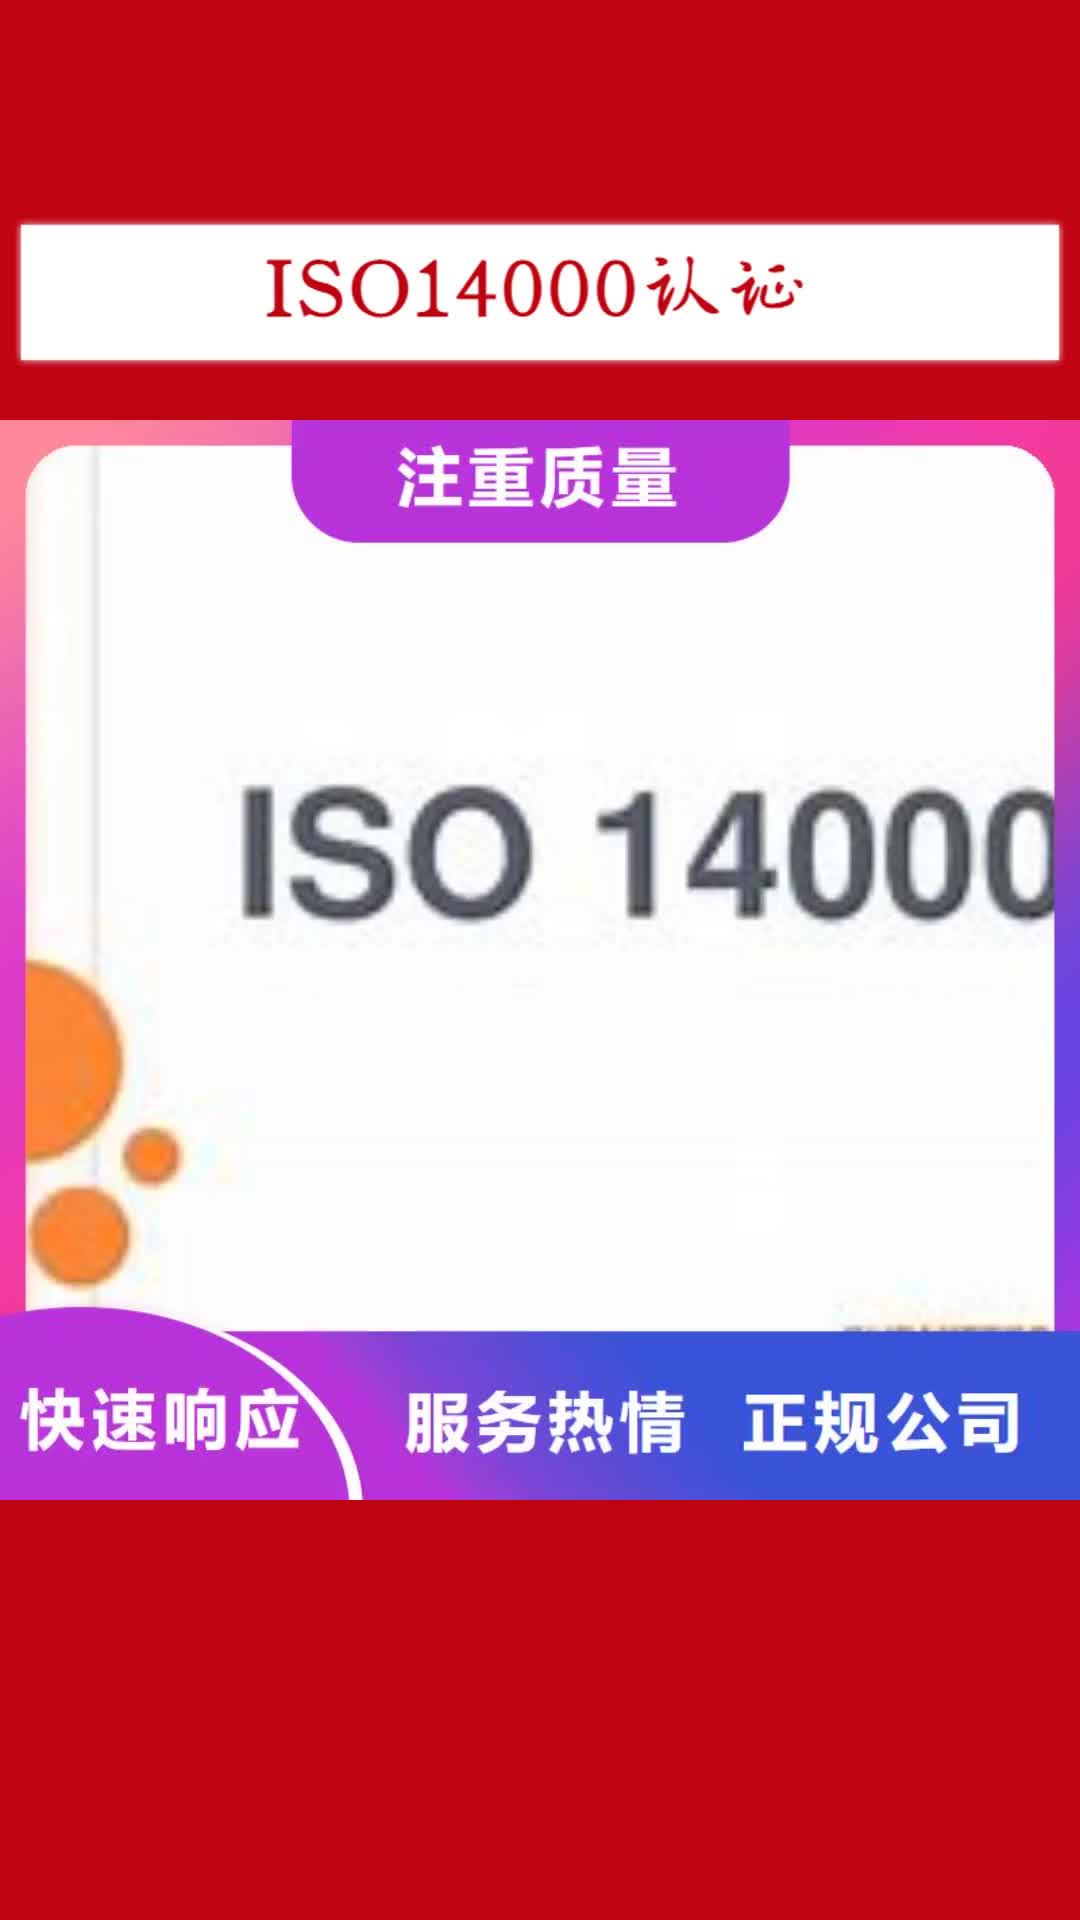 【衡水 ISO14000认证,ISO9001\ISO9000\ISO14001认证价格低于同行】